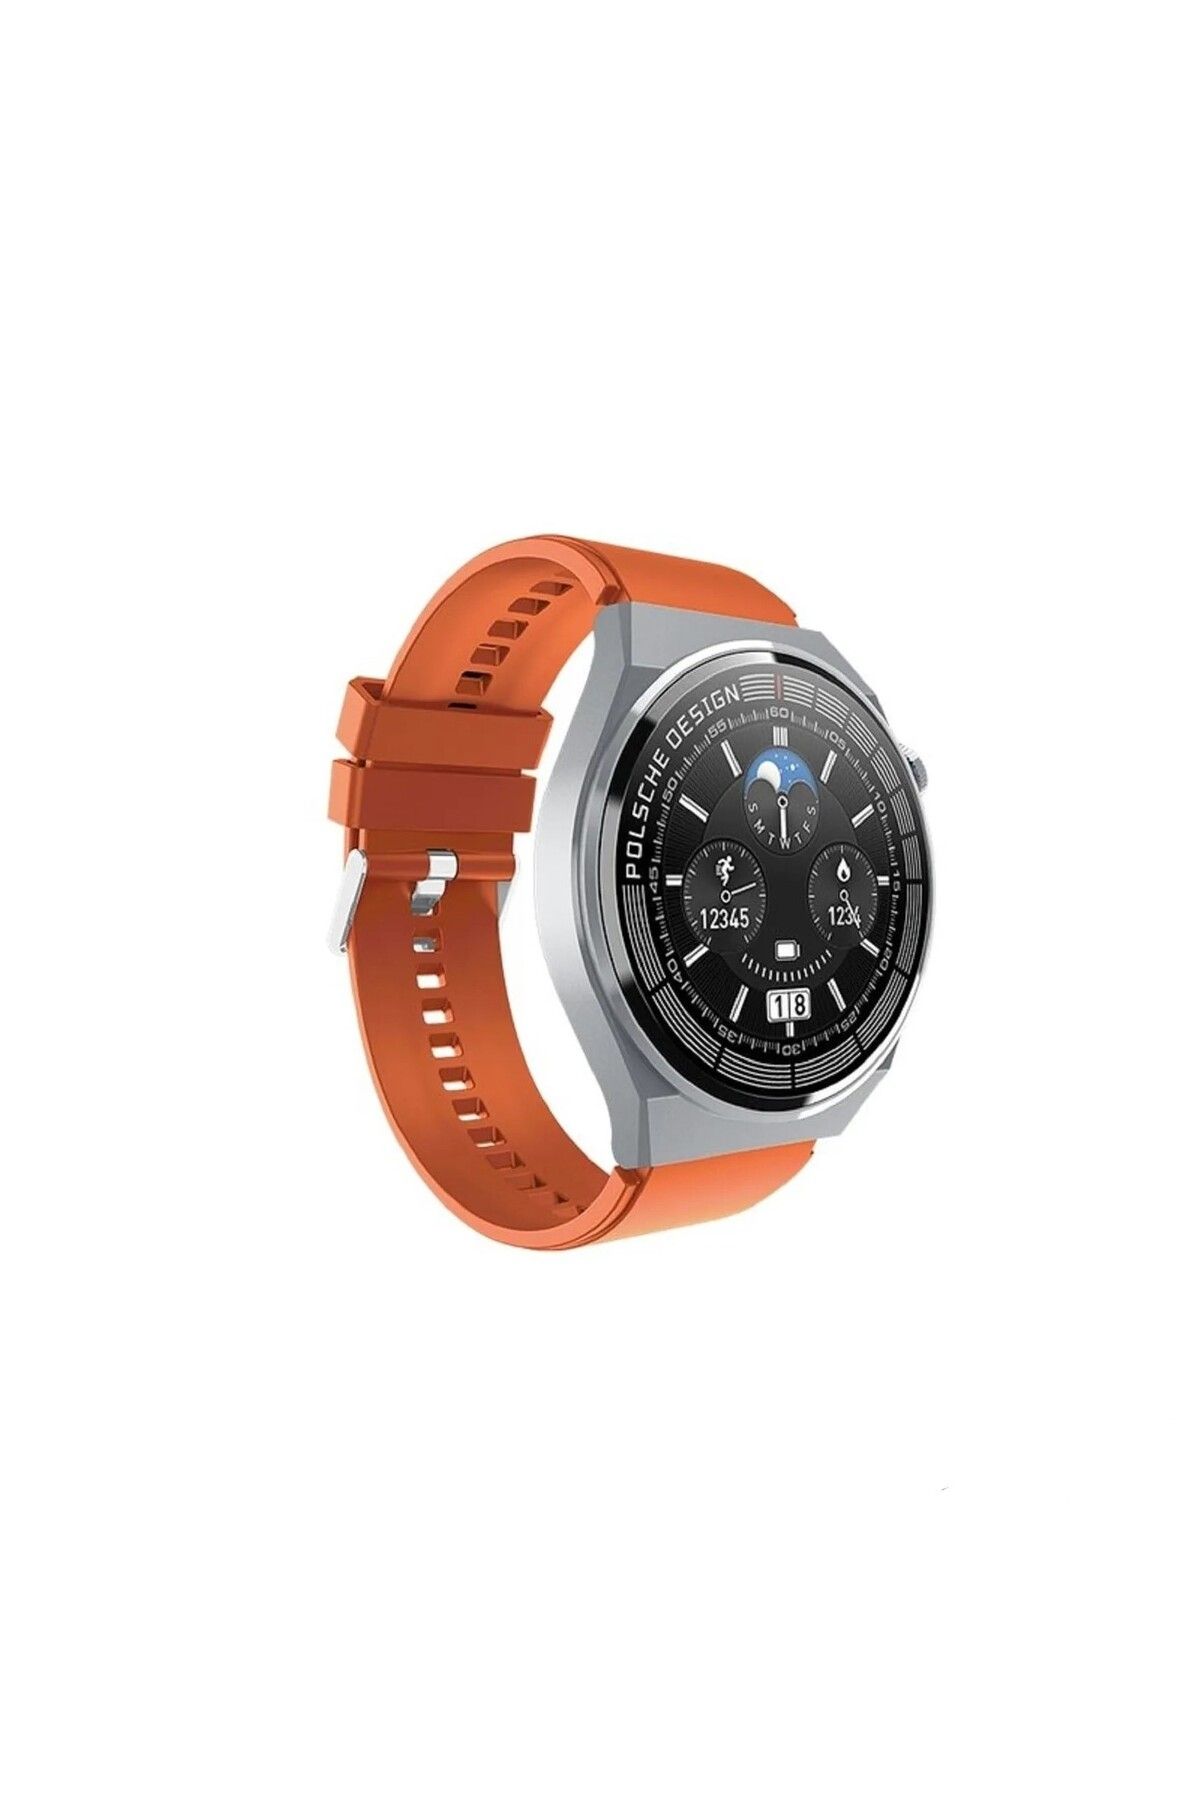 Global 2023 Watch GT3 Max Android İos Uyumlu HarmonyOs Uyumlu Akıllı Saat Turuncu WNE0935